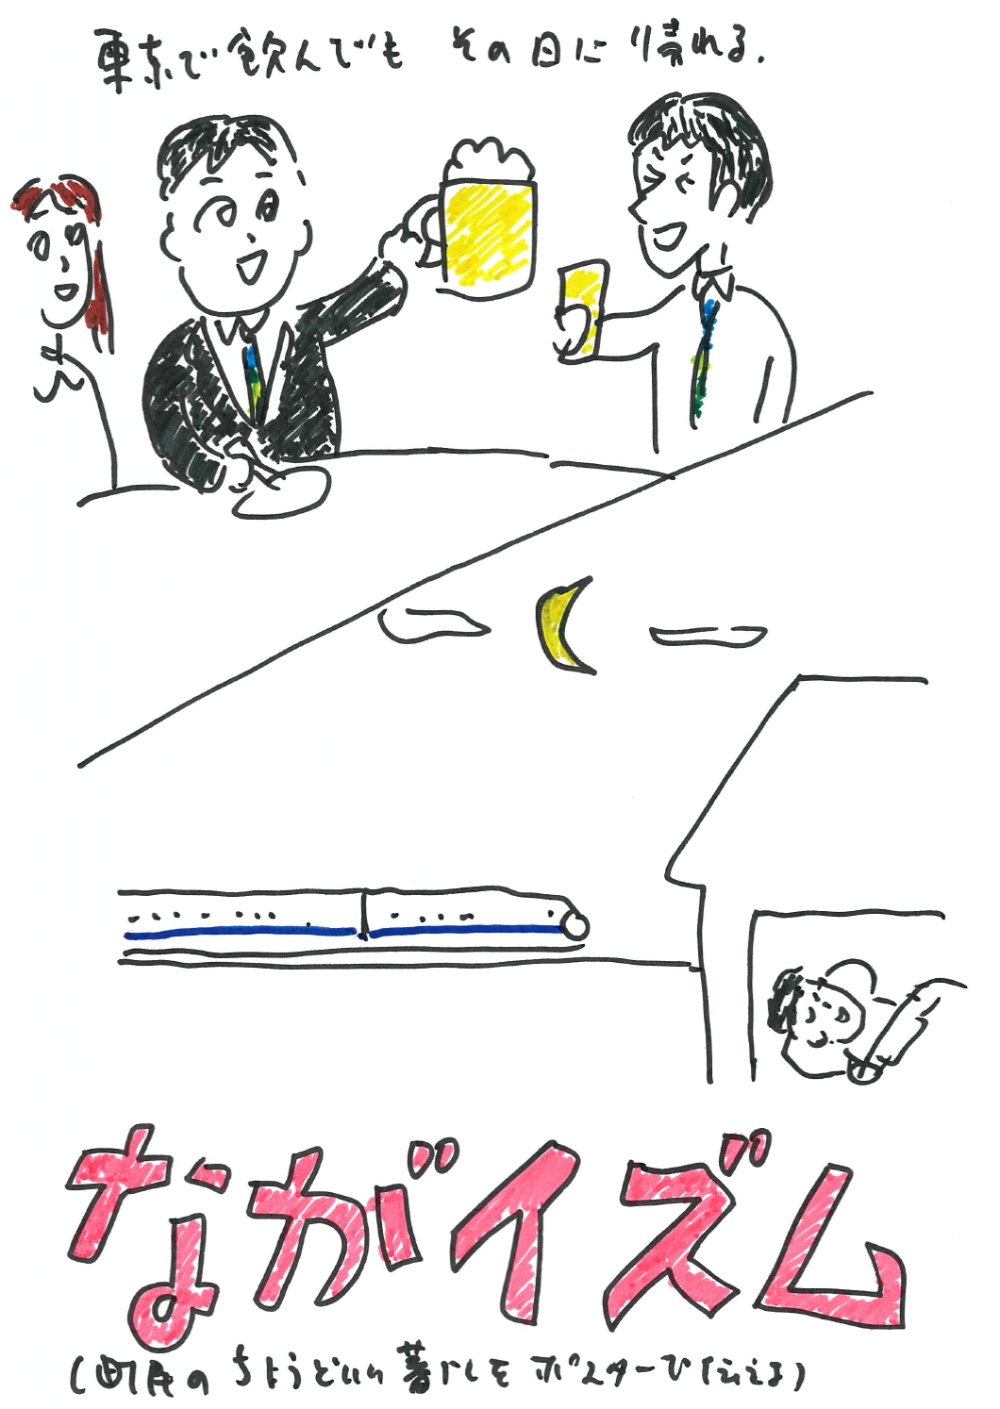 都内で飲み会があっても、新幹線で帰宅できることを表したイラスト